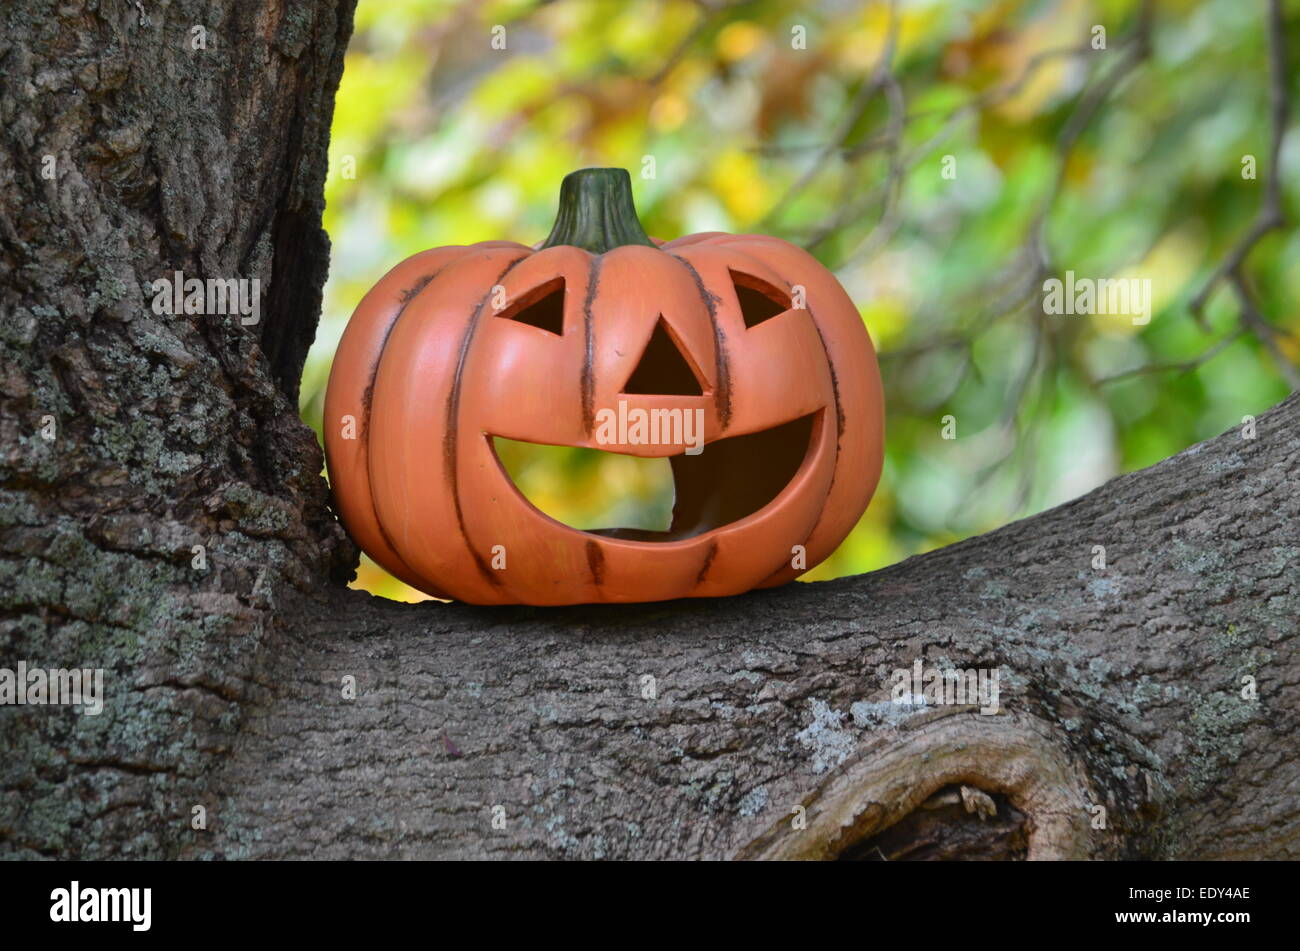 Pumpkin on a tree limb Stock Photo